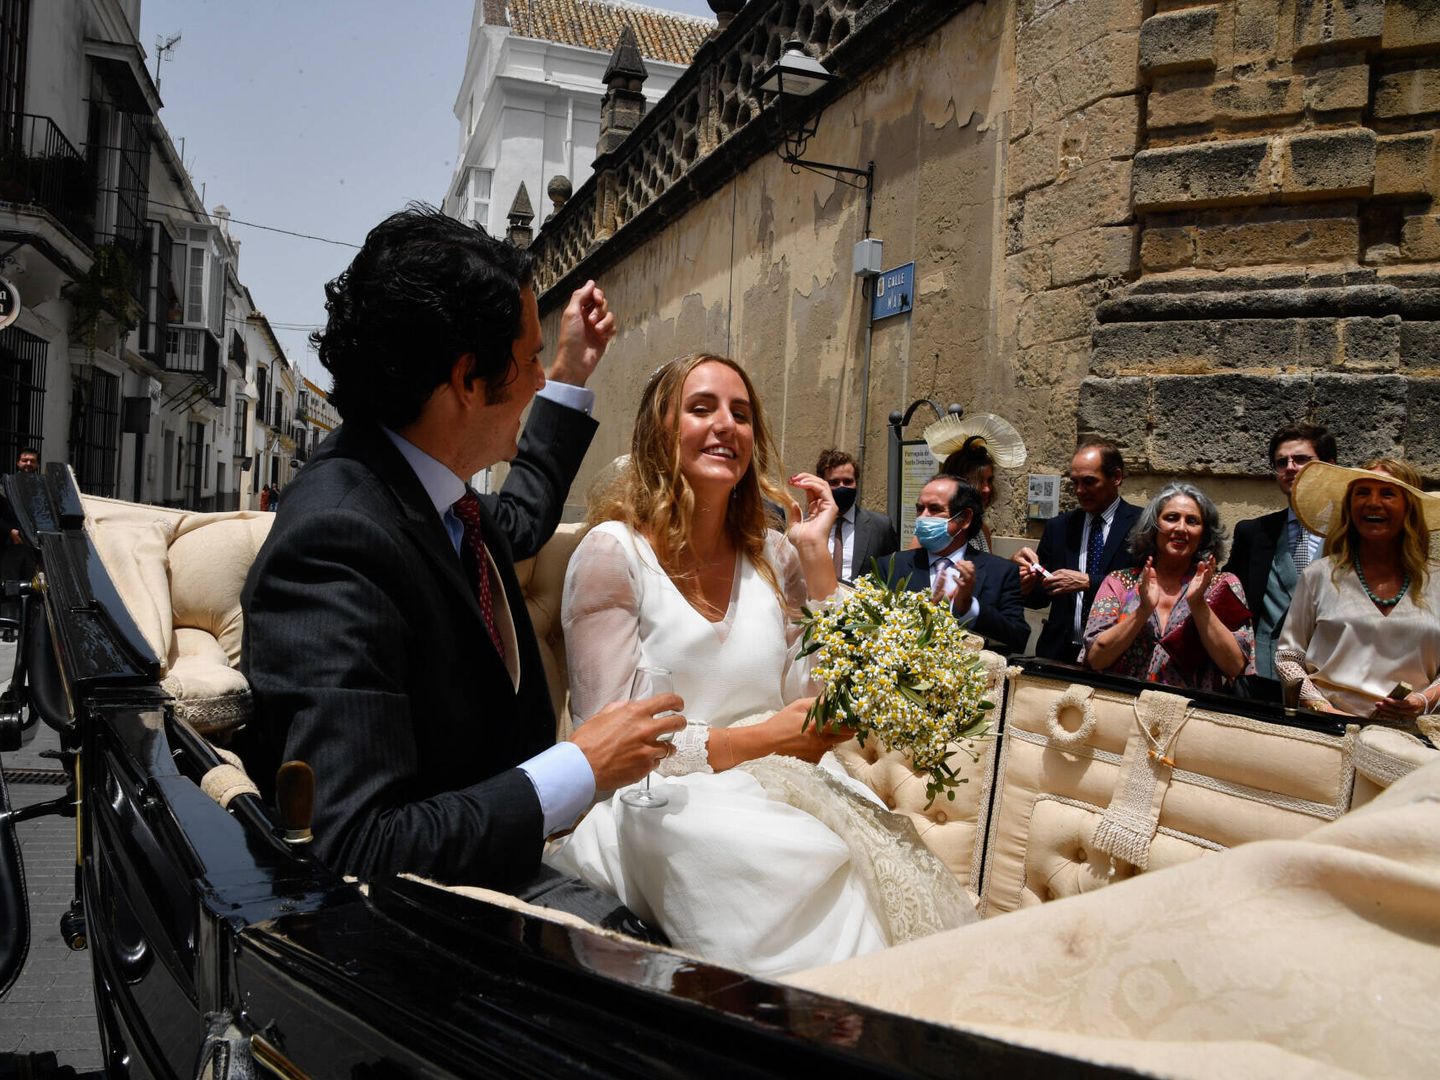 Ymelda Bilbao y Borja Mesa Jareño en su boda en Sanlúcar de Barrameda, Cádiz. (EPA)